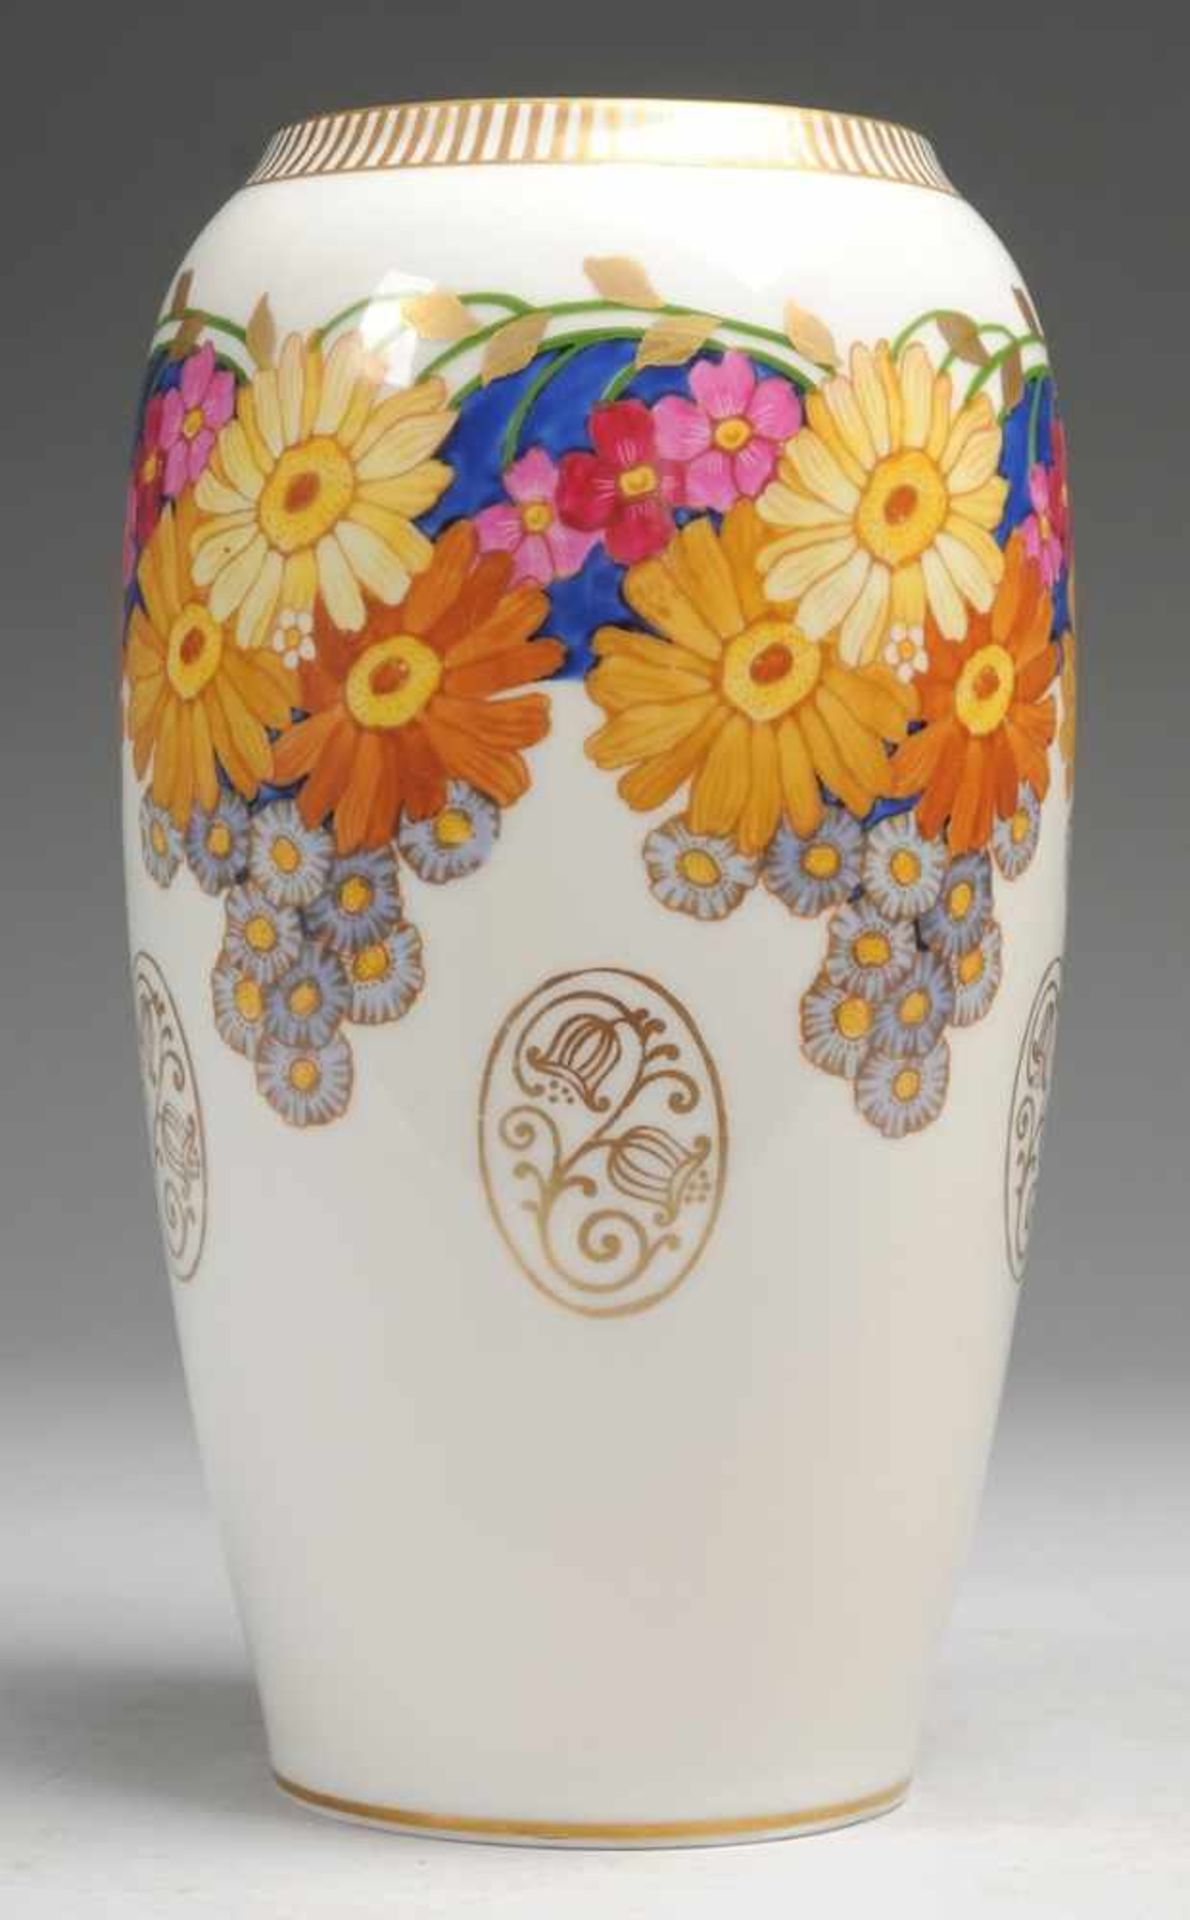 Jugendstil-Vase Weiß, glasiert. Ovoider Korpus mit eingezogener Mündung. Polychrome, golden